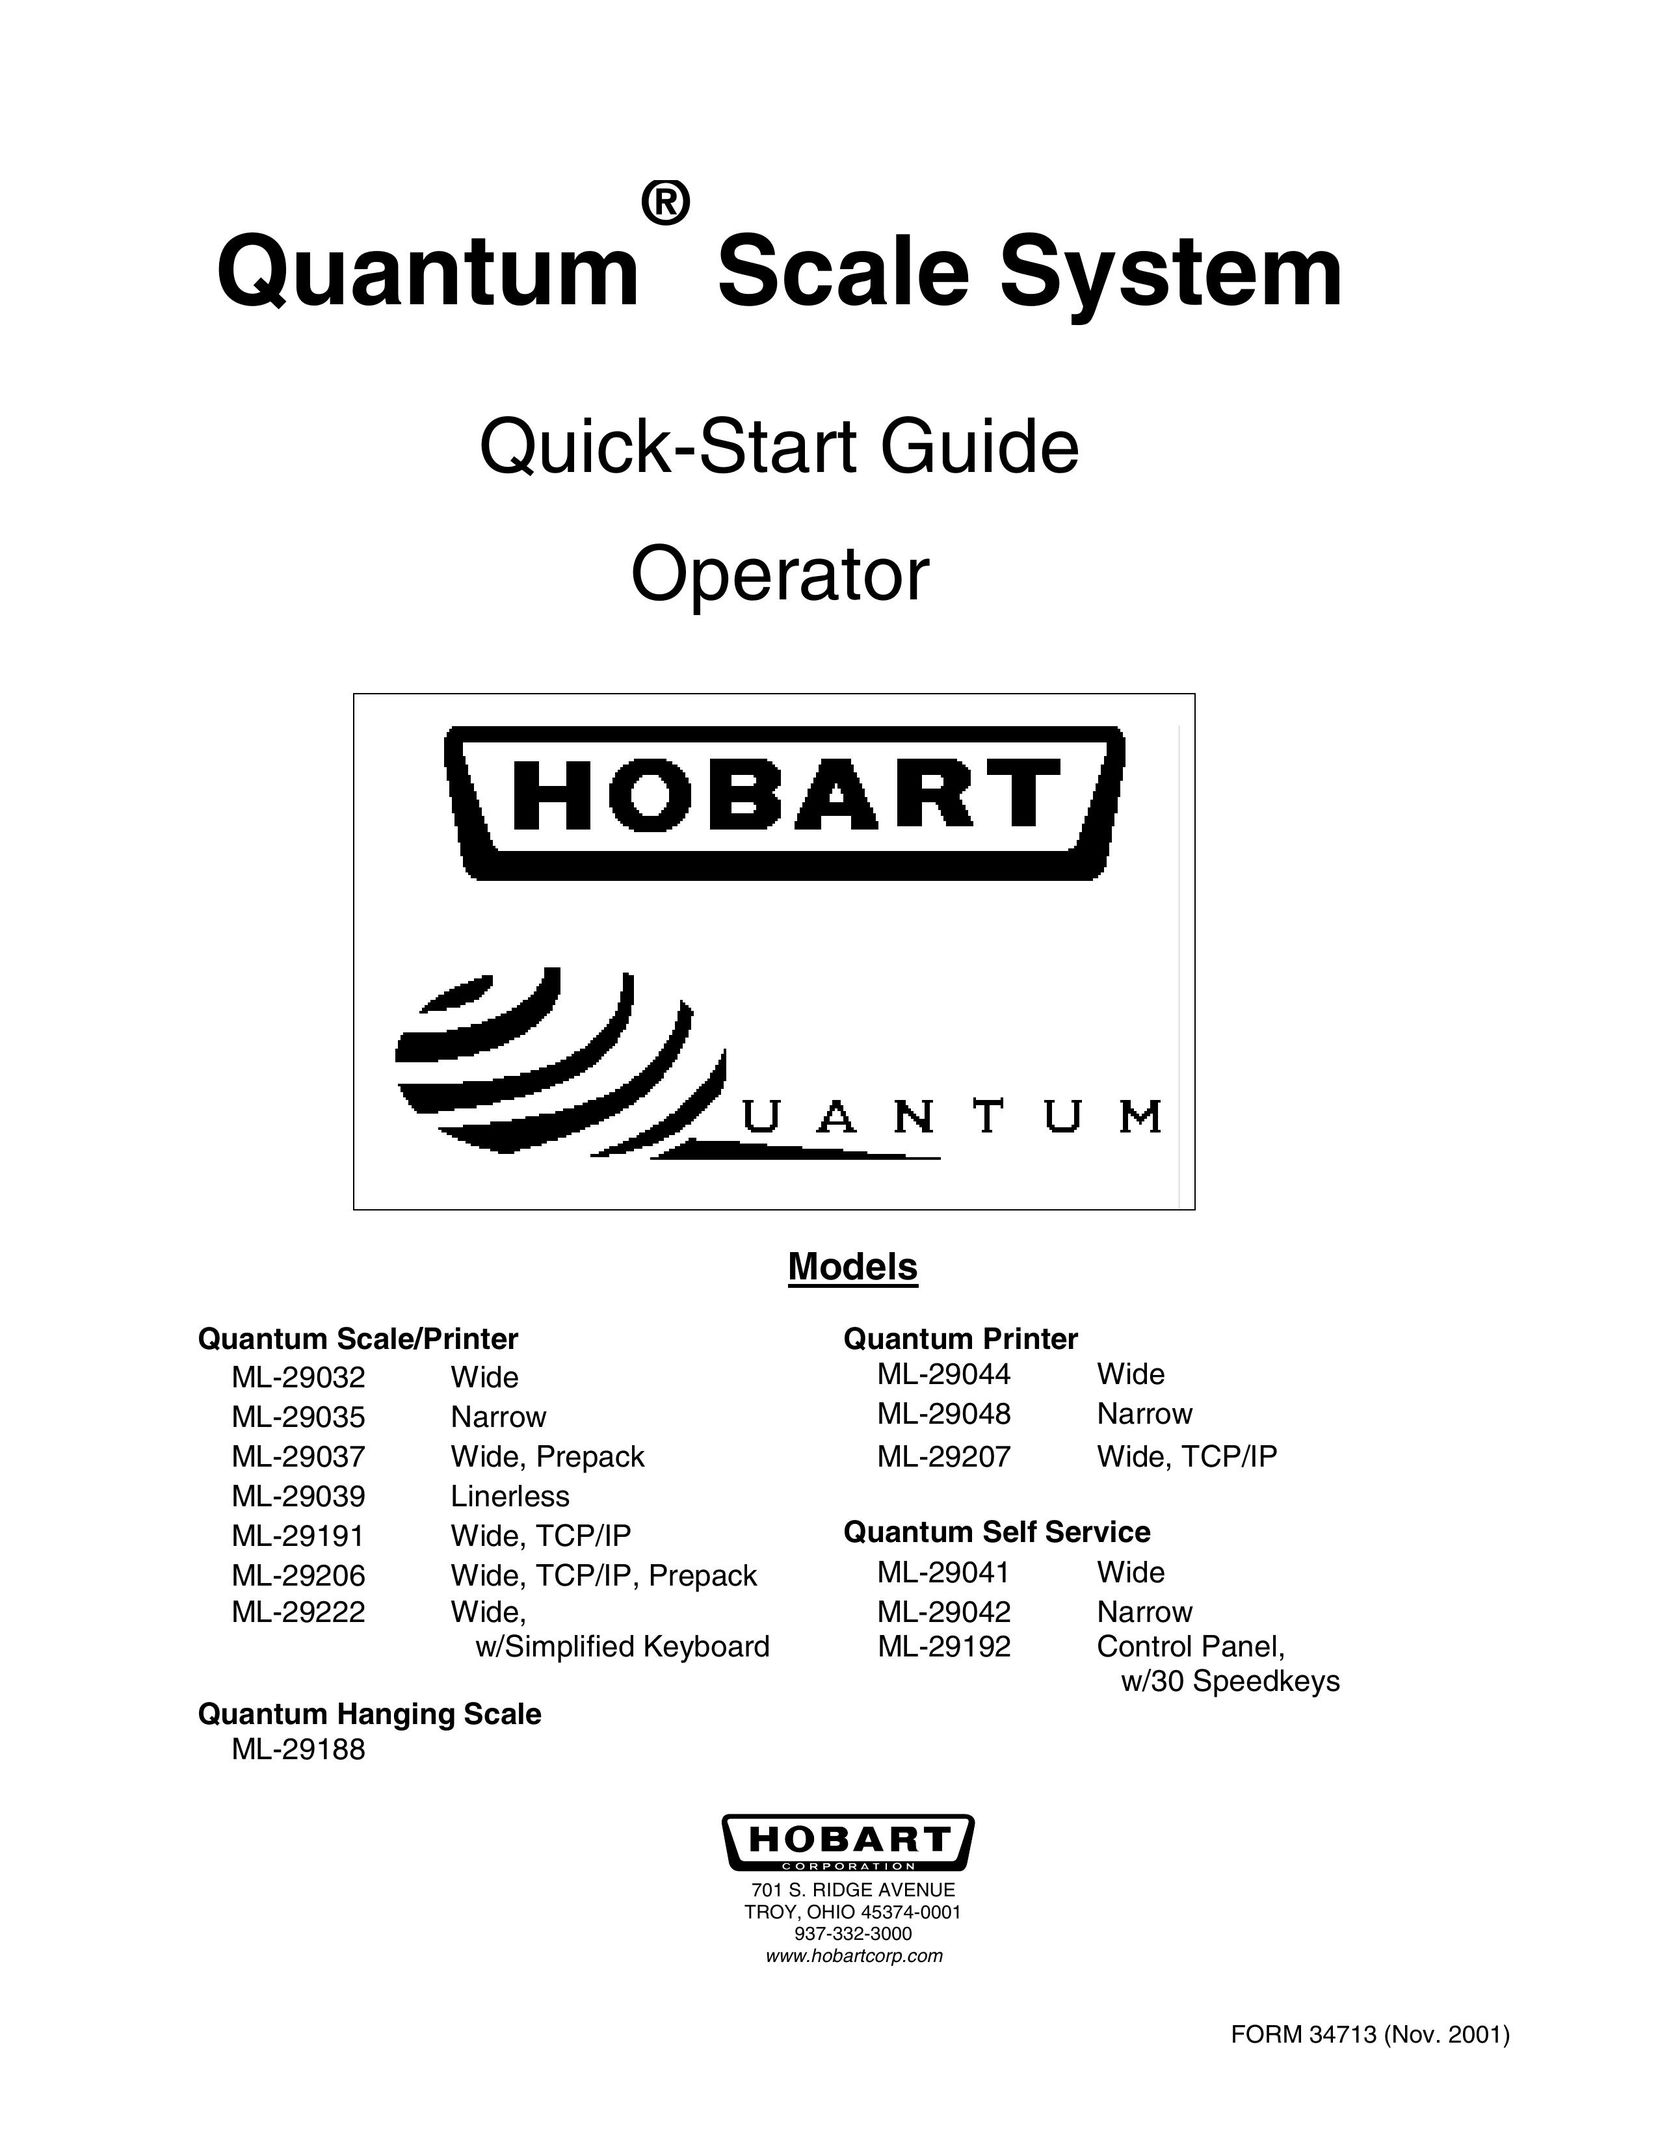 Hobart ML-29042 Printer User Manual